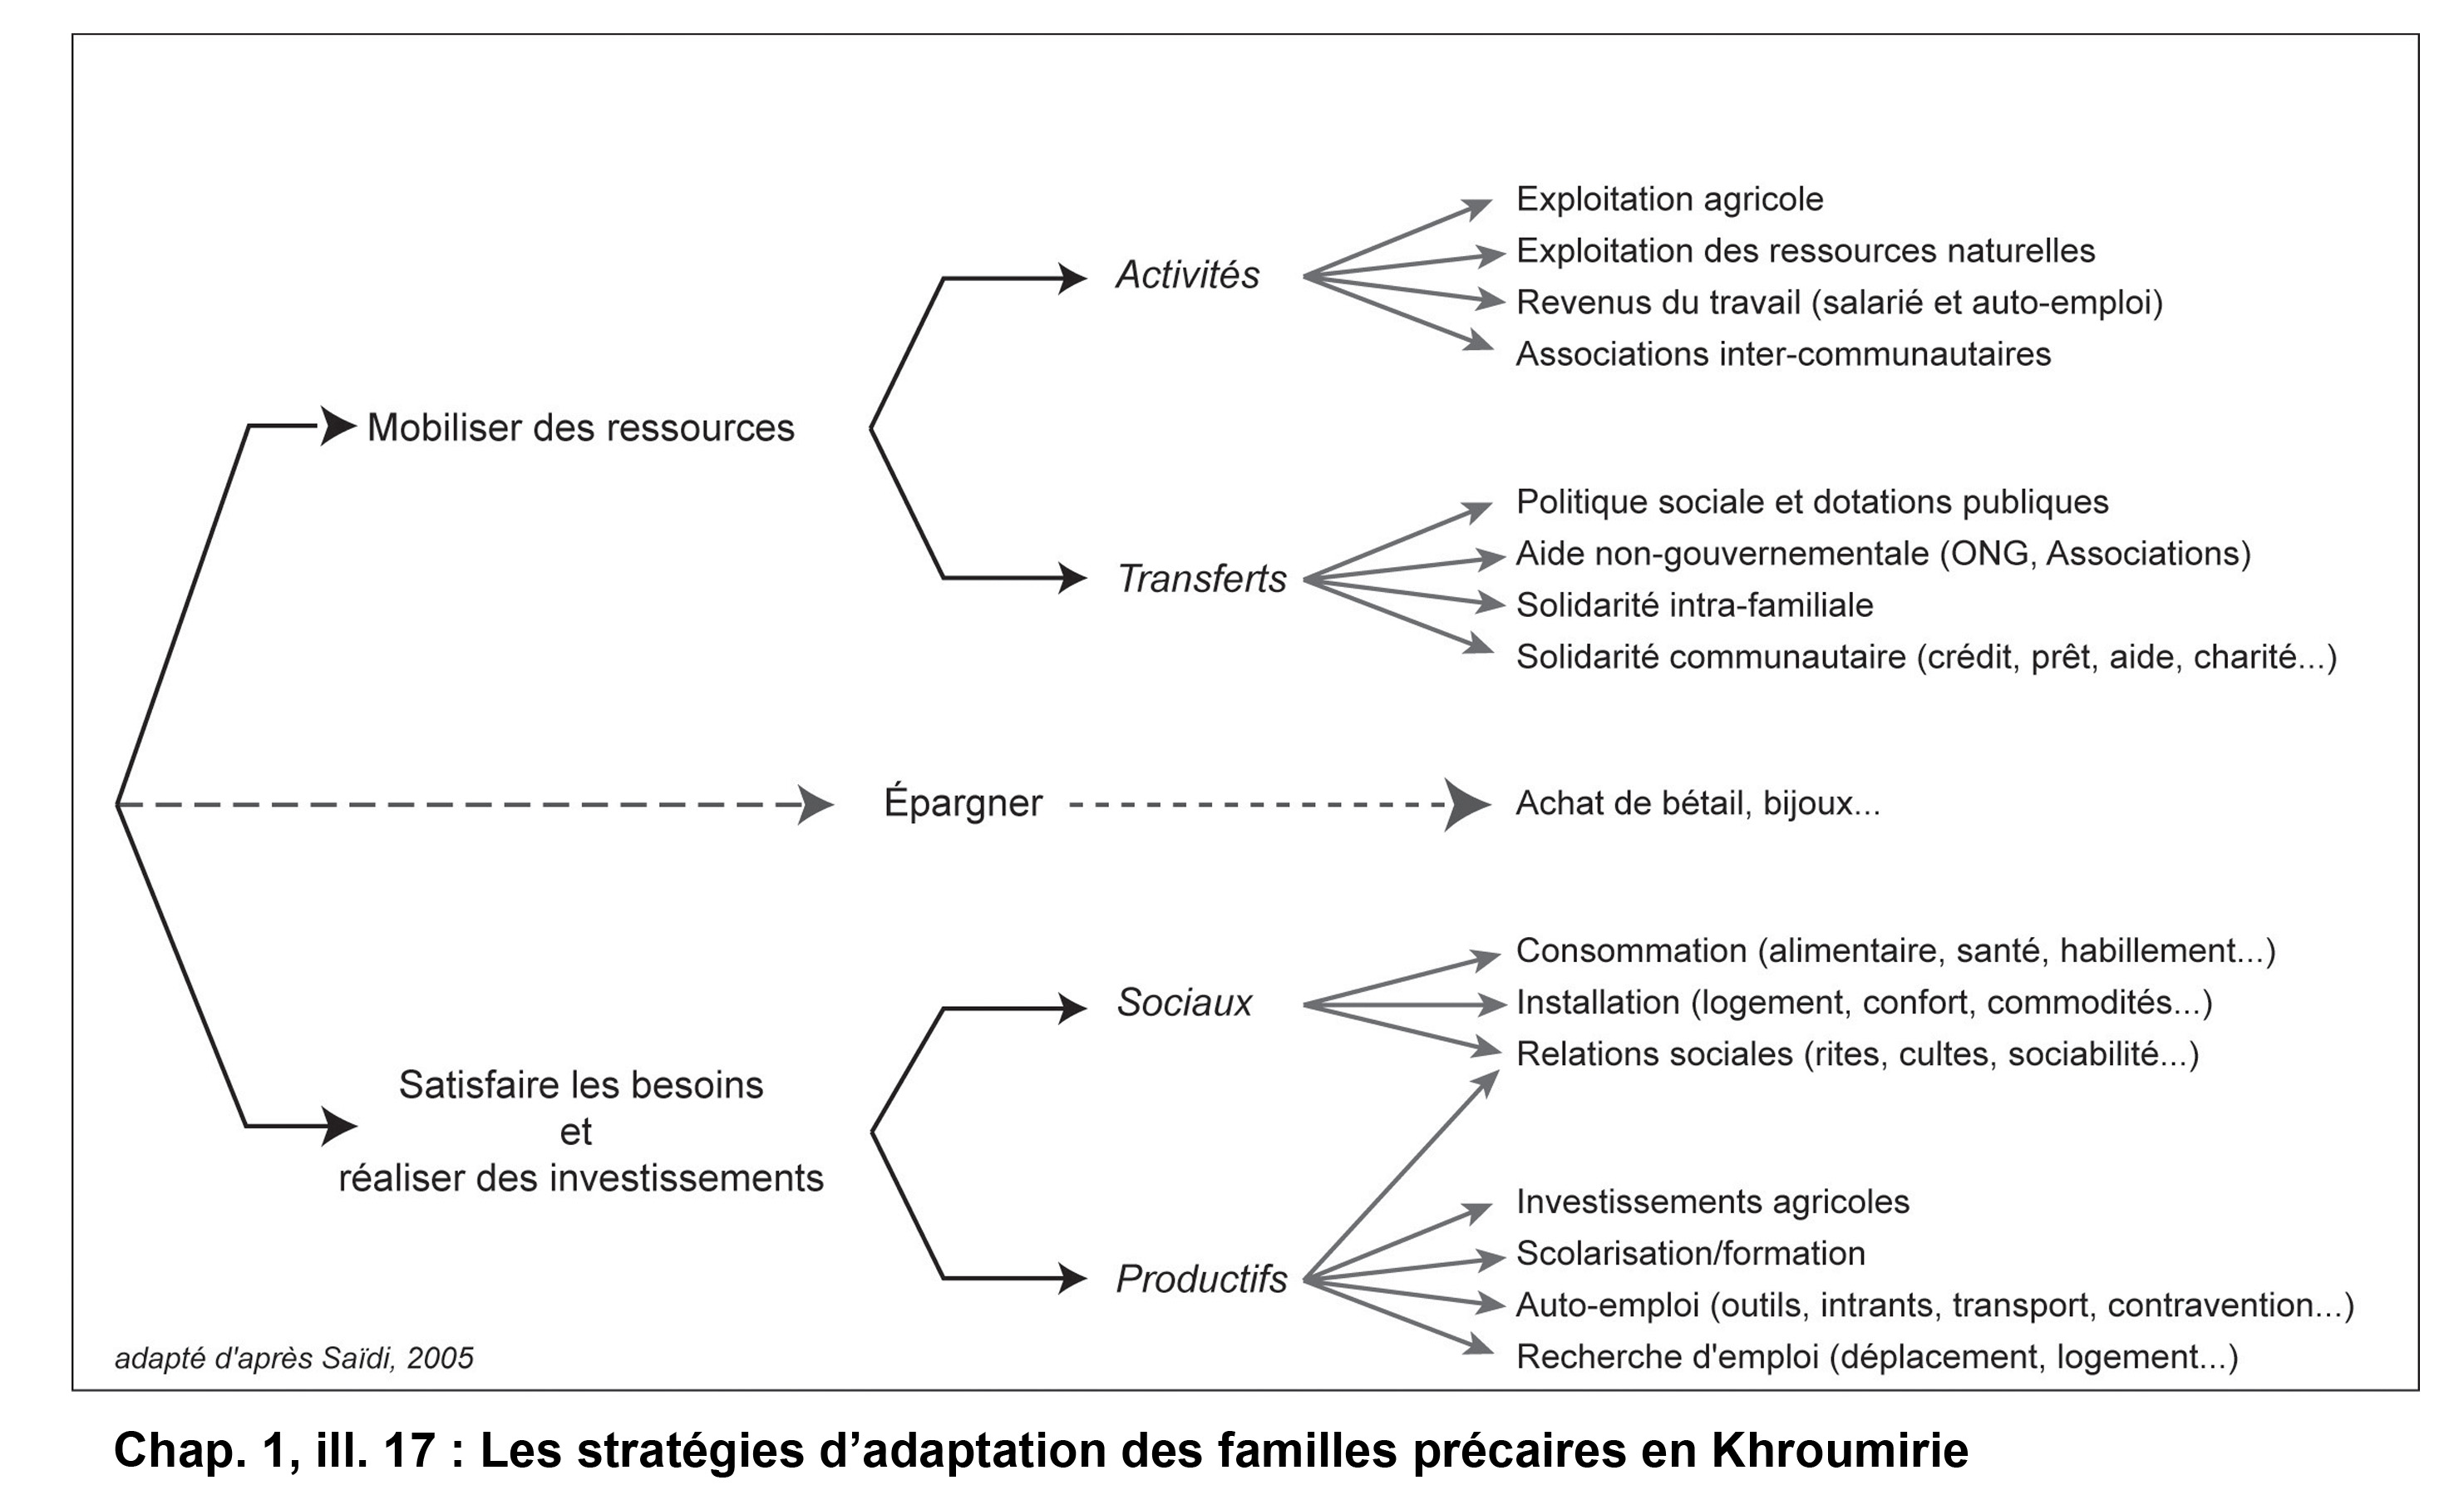 Illustration 17 : Les stratégies d’adaptation des familles précaires en Khroumirie